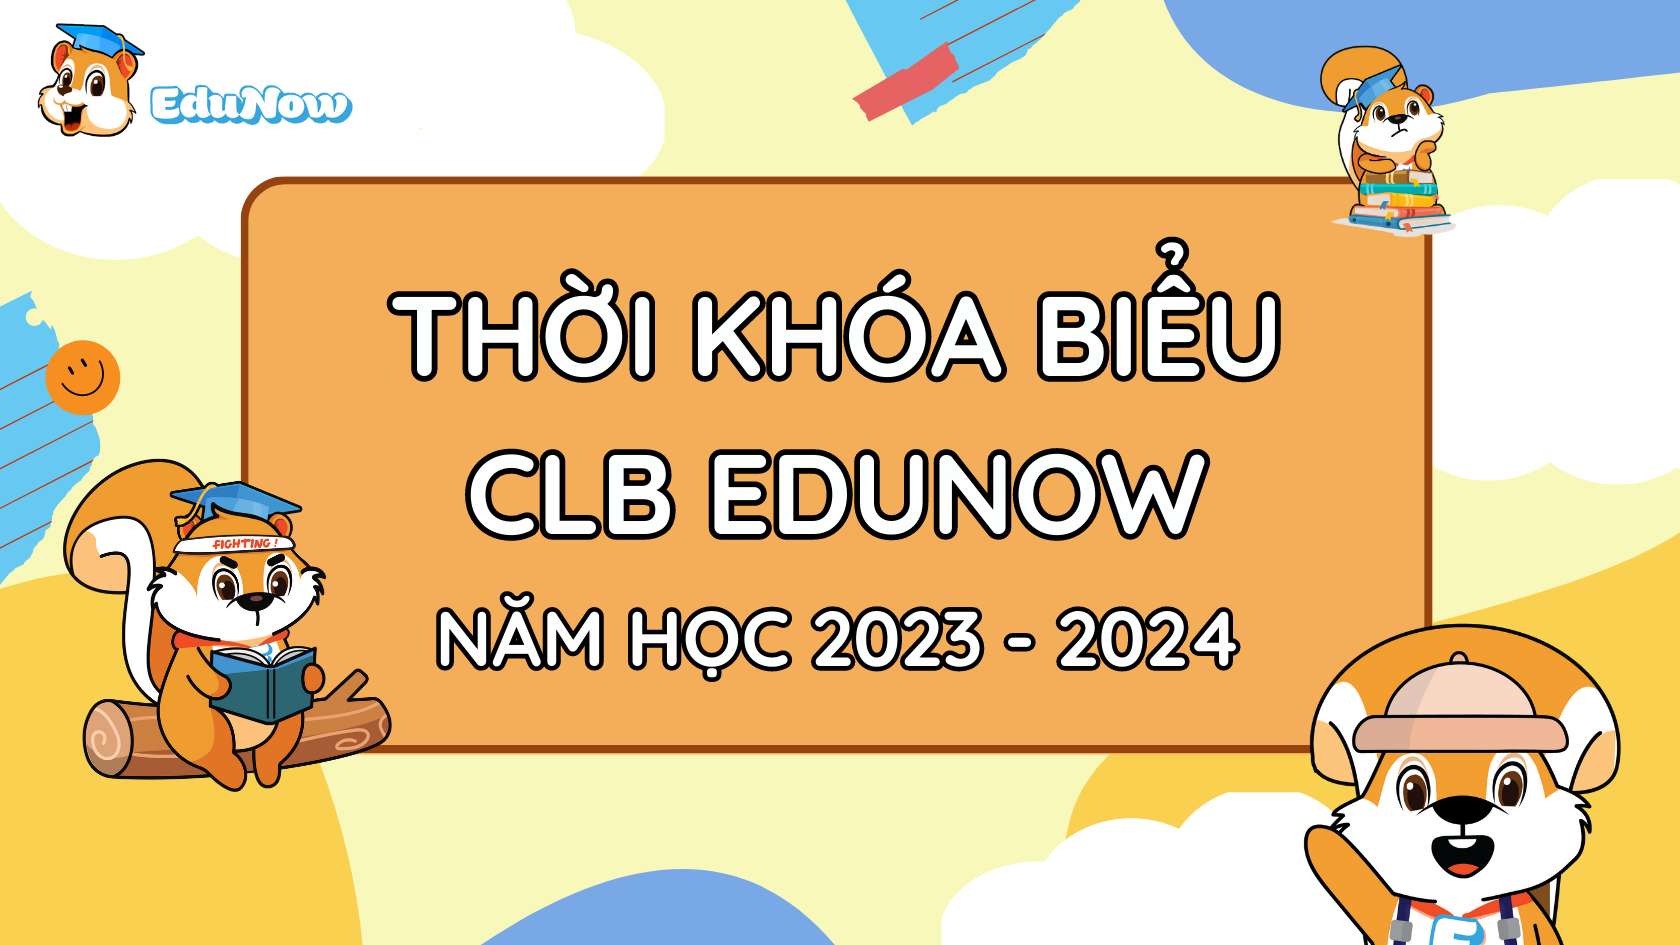 THỜI KHOÁ BIỂU CLB EDUNOW NĂM HỌC 2023 - 2024